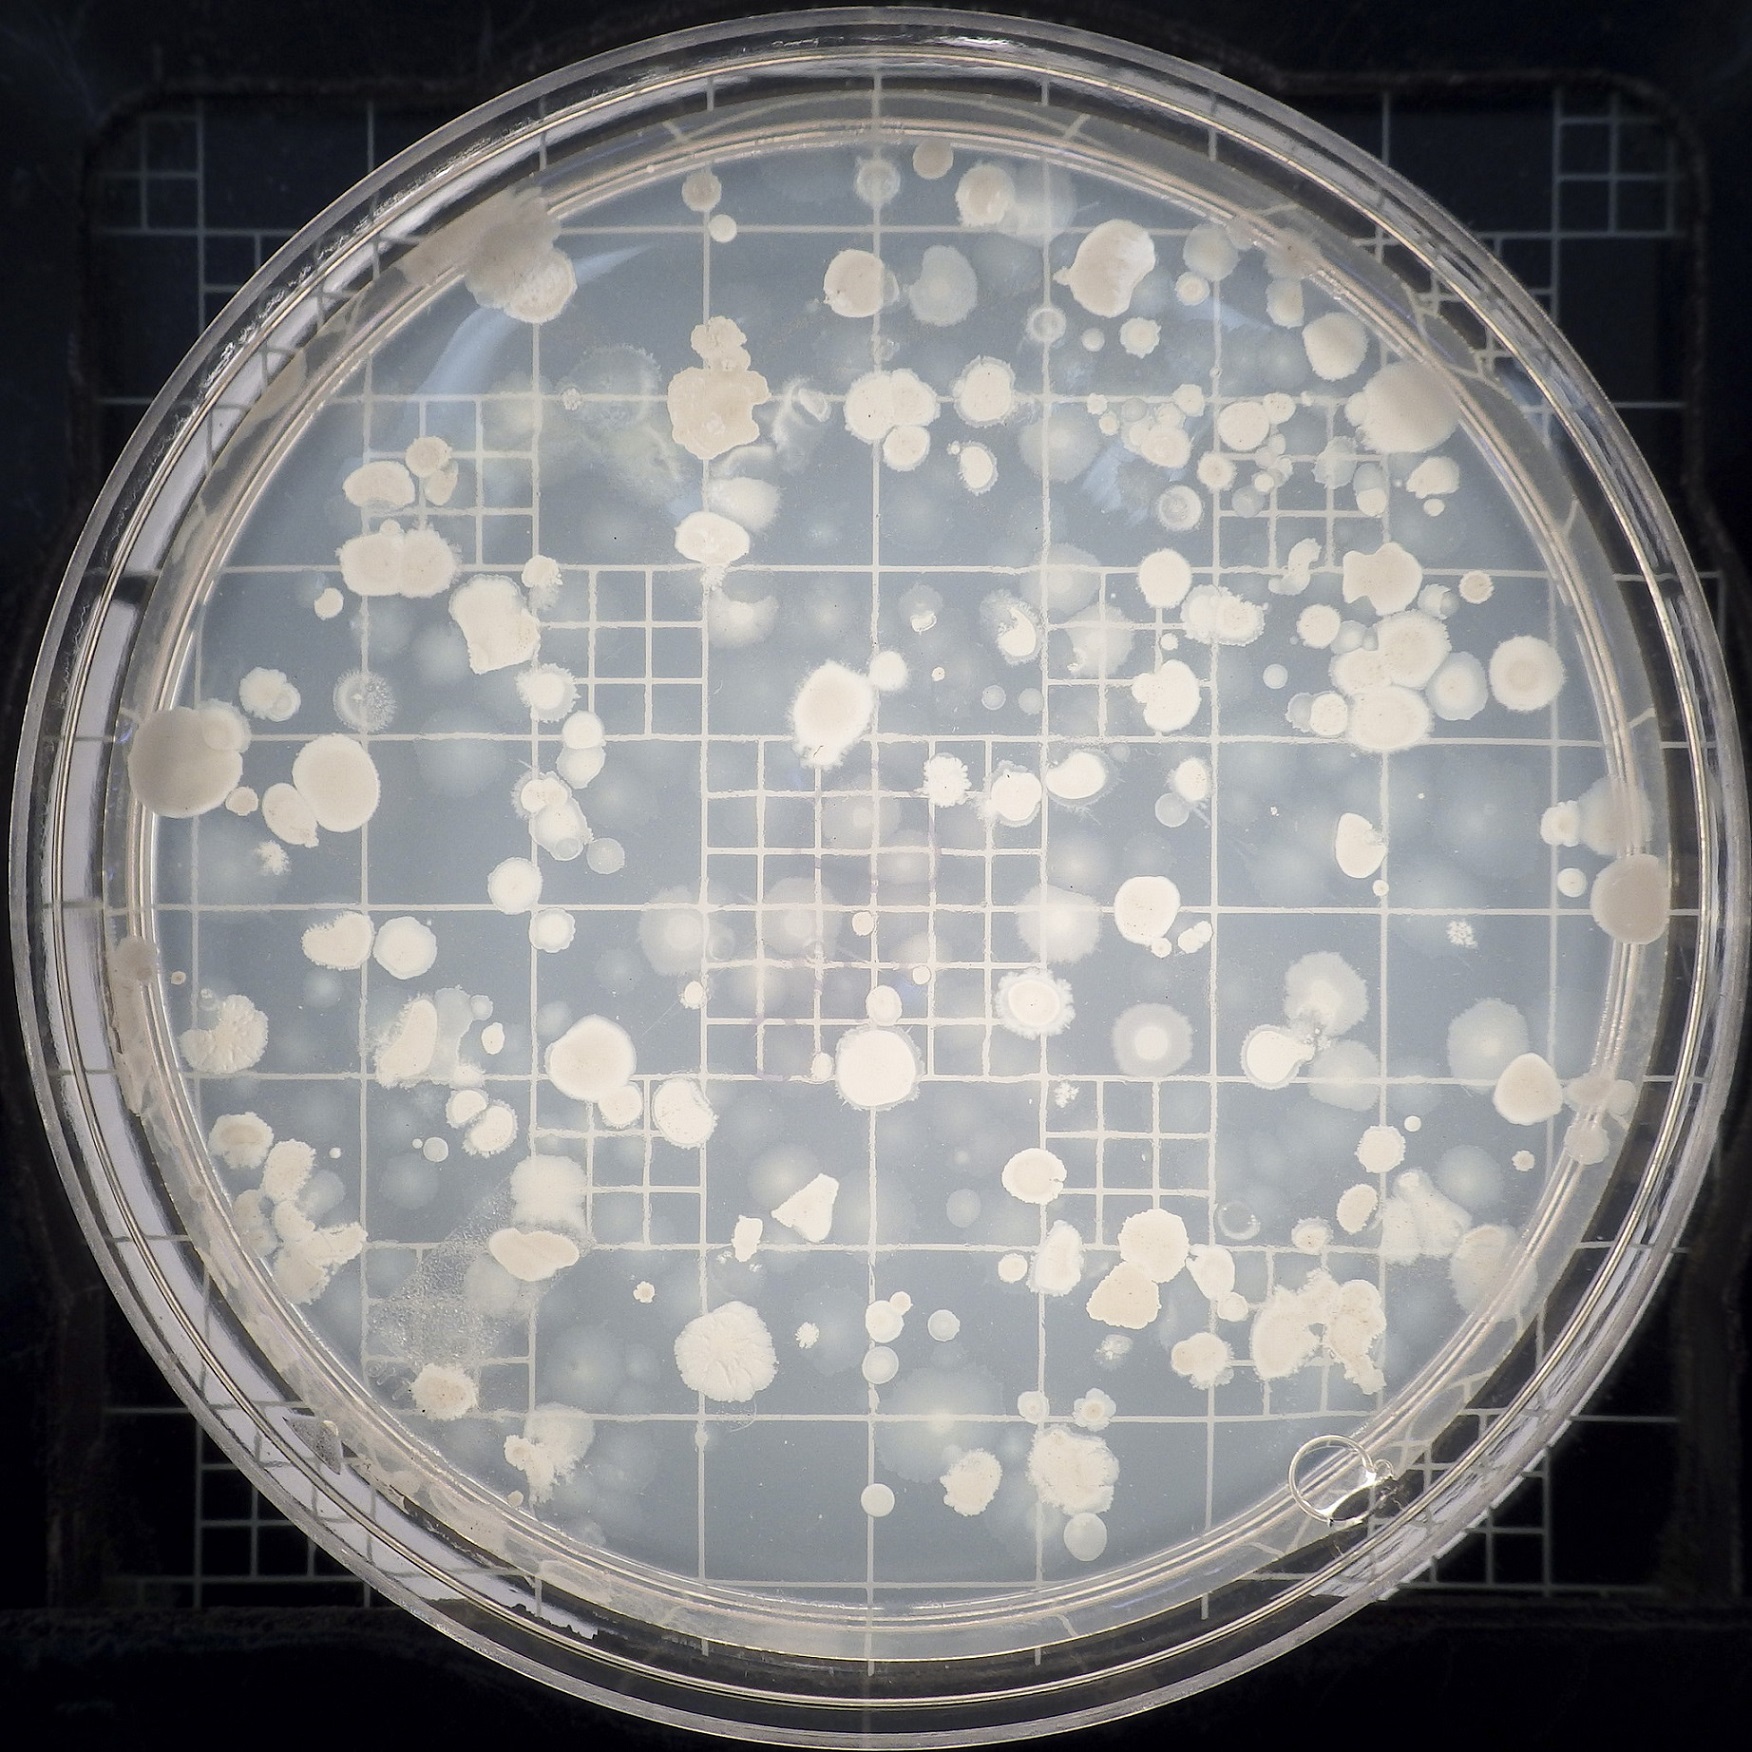 Bacillus subtilis est une bactérie modèle qui peut être cultivée dans une boîte de Pétri en laboratoire. © Dave Thomas, Flickr, CC by nc 2.0